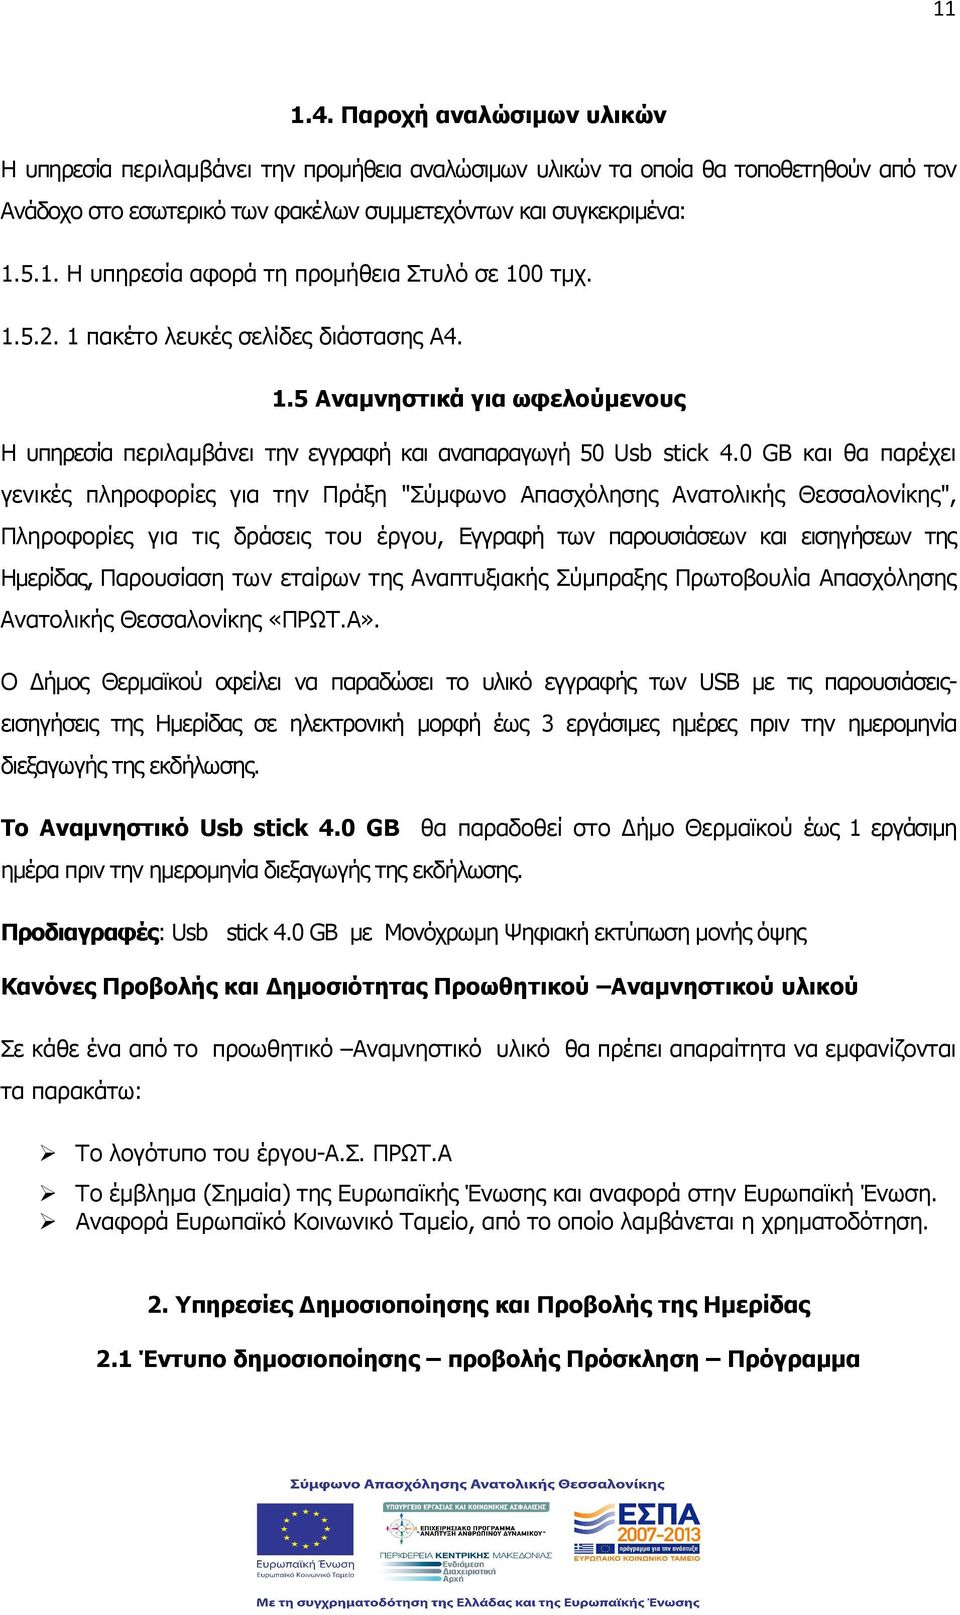 0 GB και θα παρέχει γενικές πληροφορίες για την Πράξη "Σύµφωνο Απασχόλησης Ανατολικής Θεσσαλονίκης", Πληροφορίες για τις δράσεις του έργου, Εγγραφή των παρουσιάσεων και εισηγήσεων της Ηµερίδας,